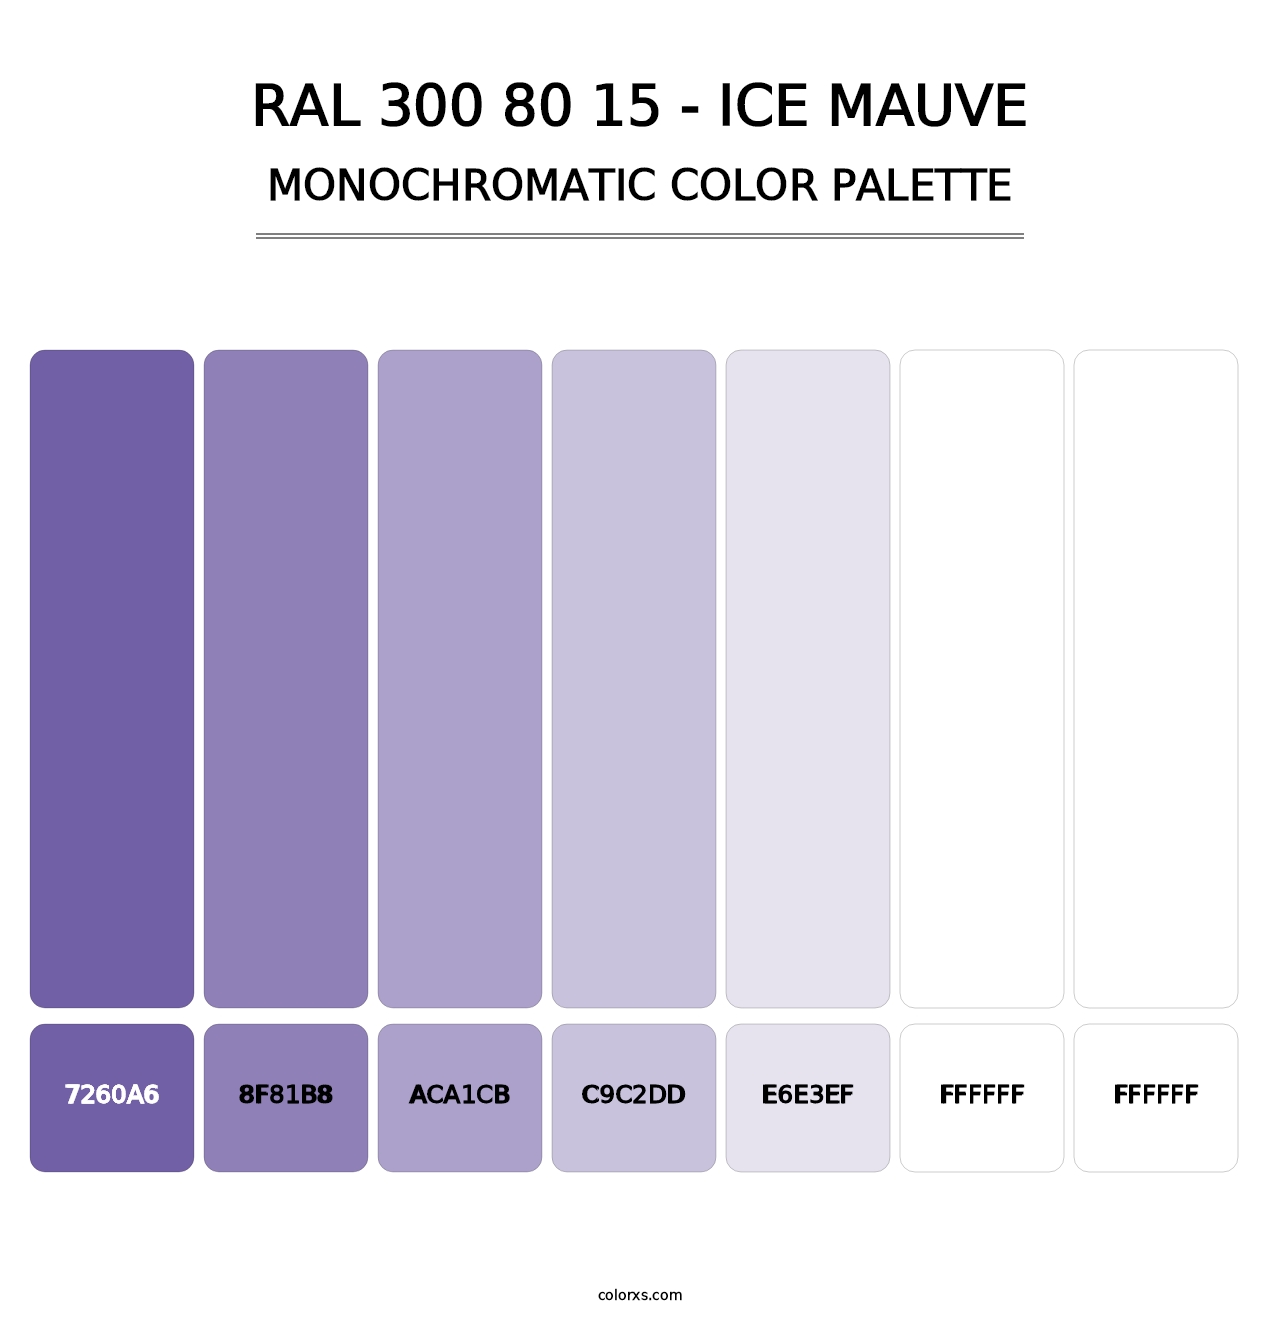 RAL 300 80 15 - Ice Mauve - Monochromatic Color Palette